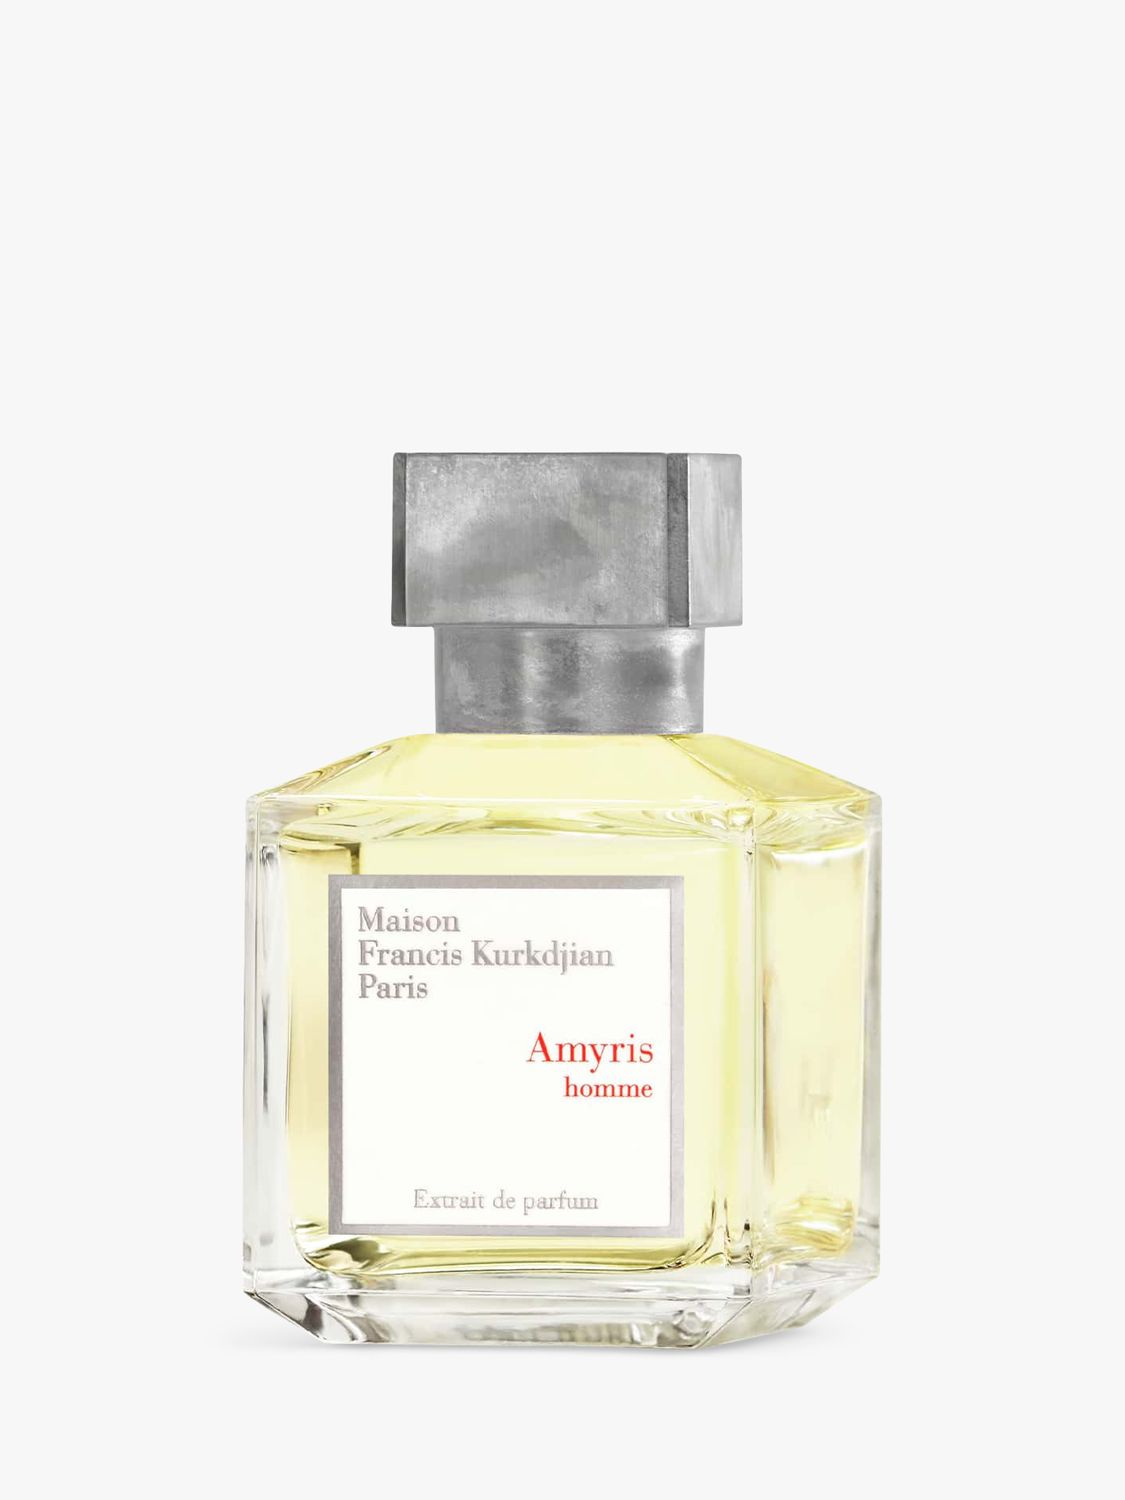 Maison Francis Kurkdjian Amyris Homme Extrait de Parfum, 70ml 1